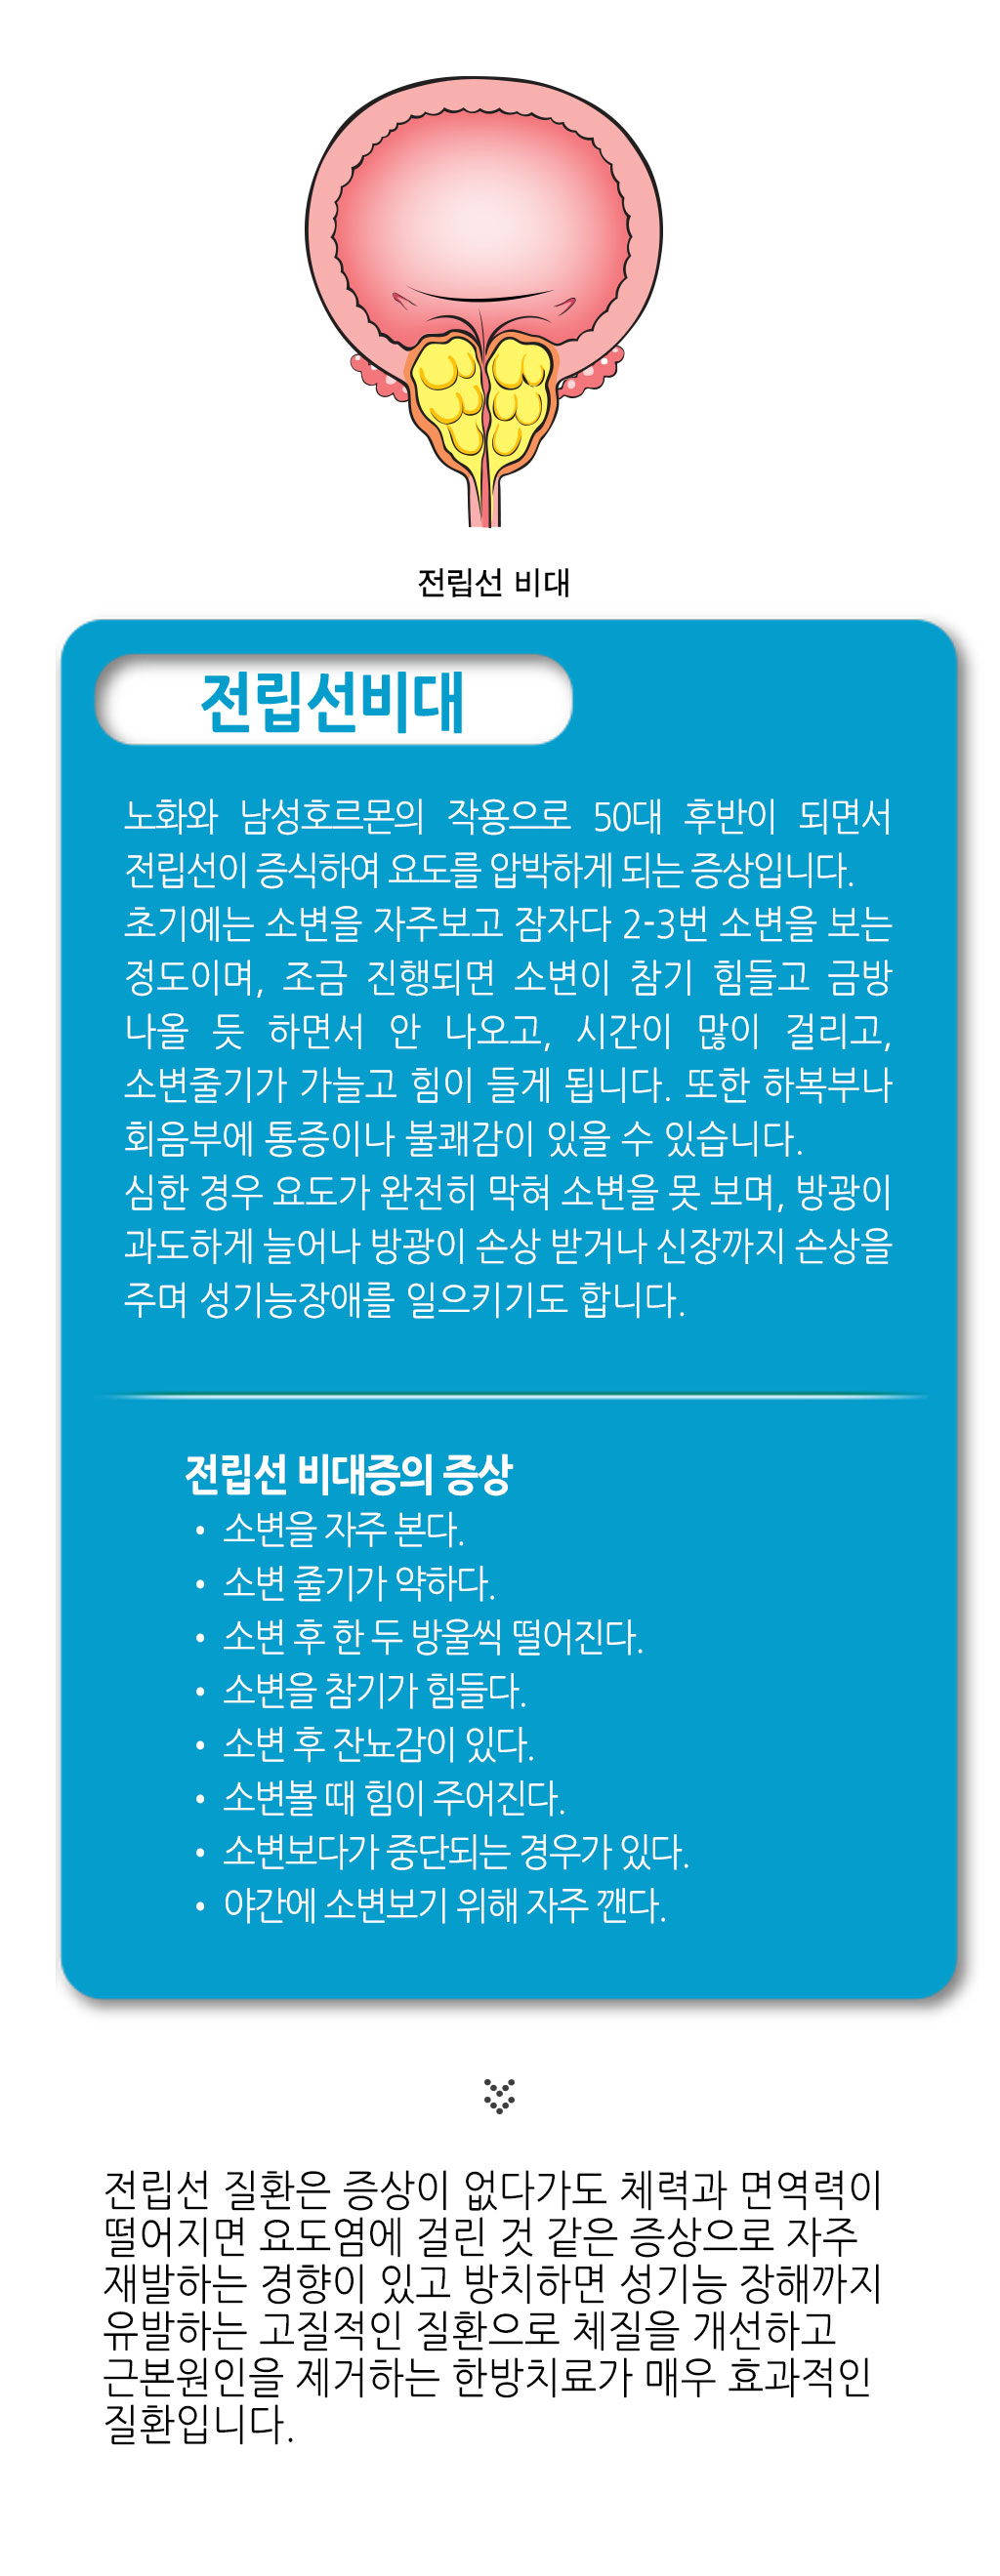 한국한의원, 한국한의원 전립선 클리닉, 전립선염, 전립선비대